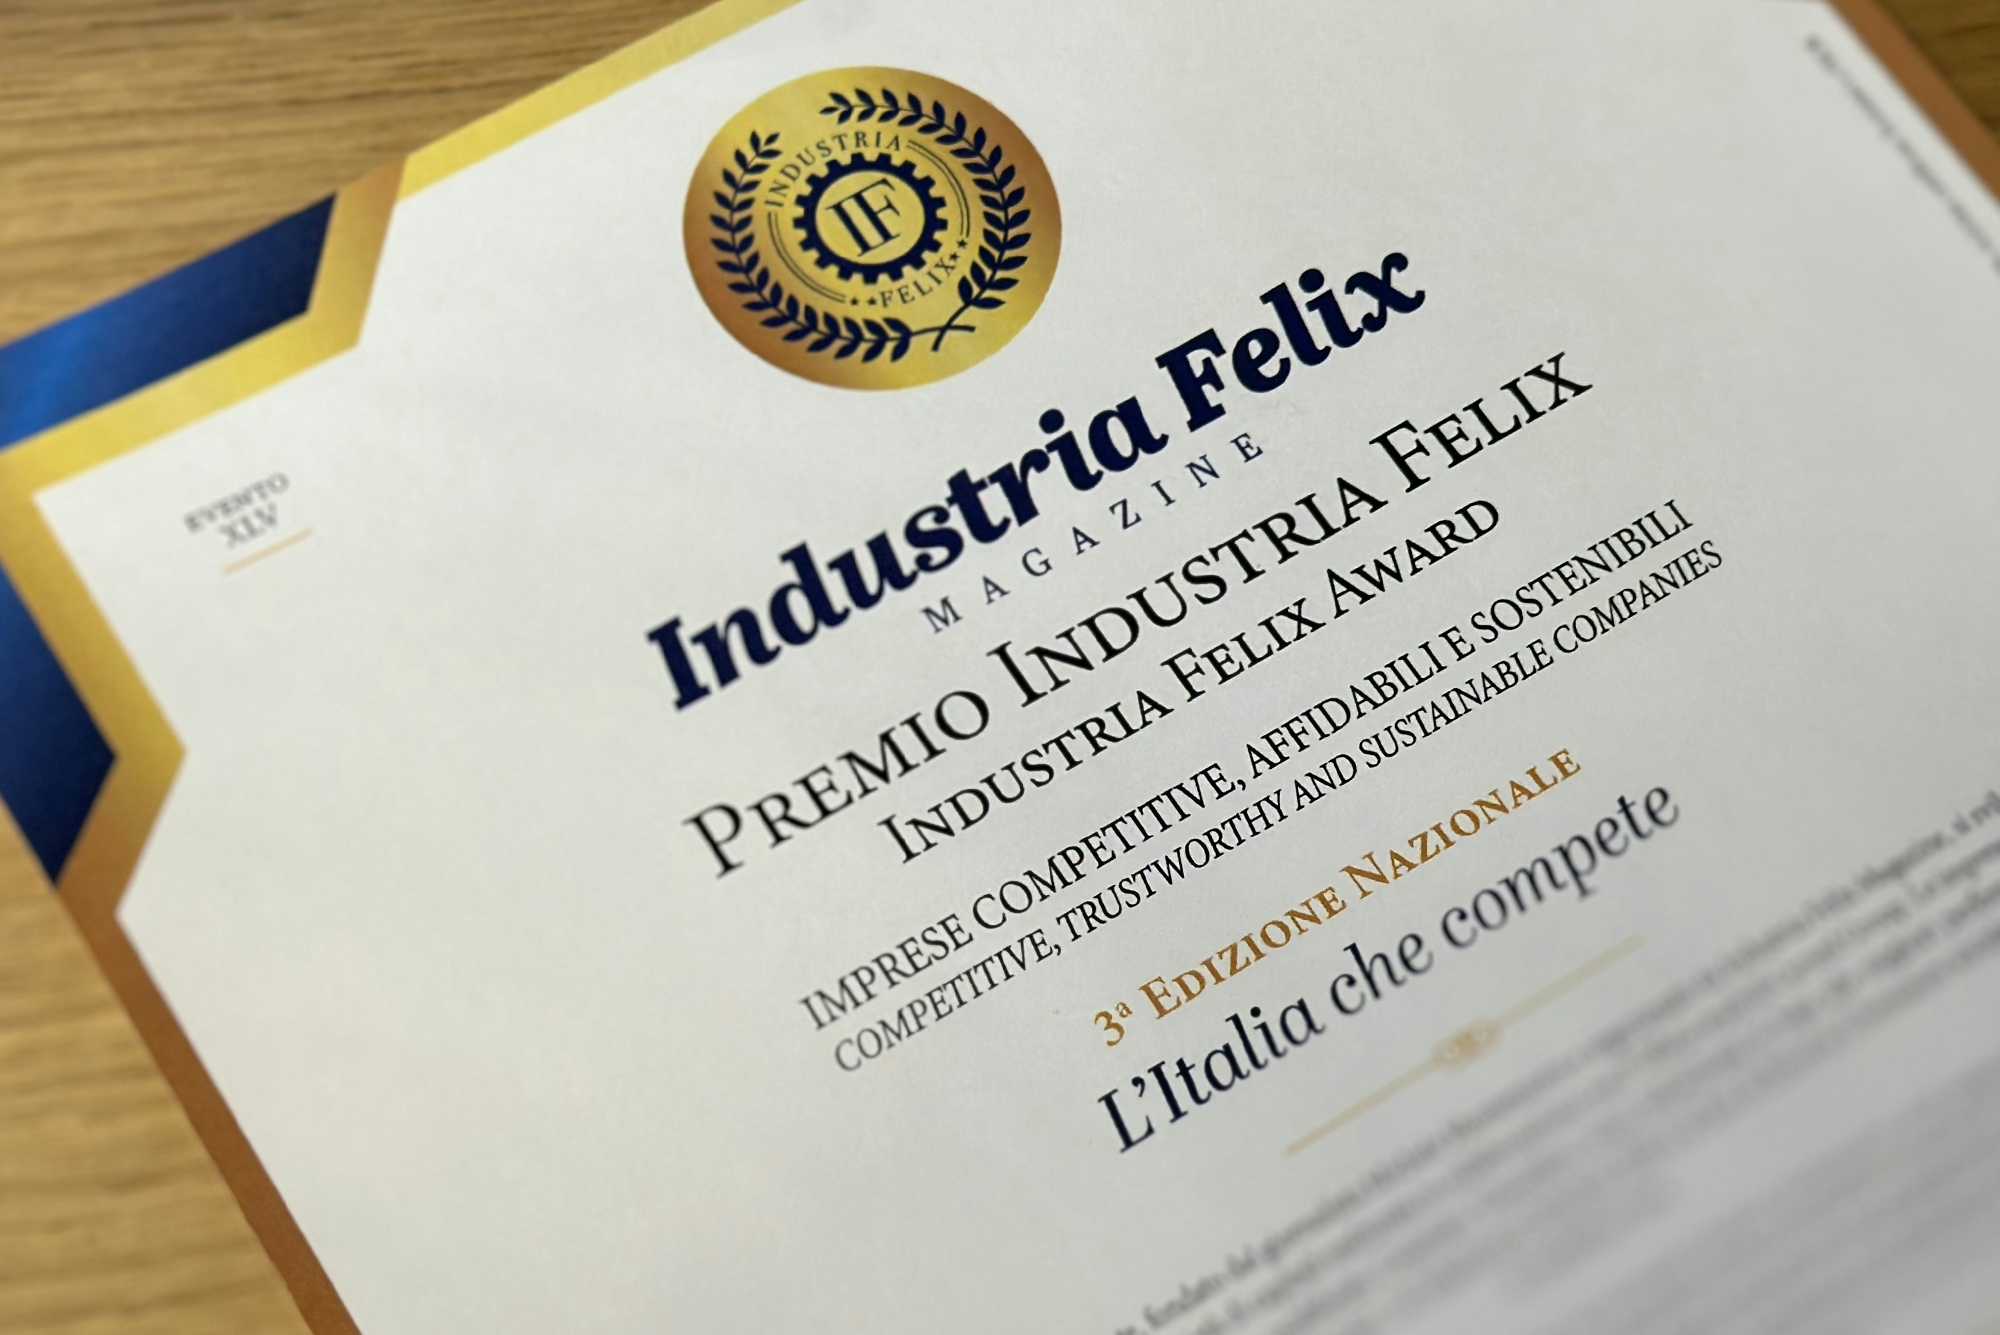 Industria Felix premia Catellani &#038; Smith alla terza edizione de “L’Italia che compete”